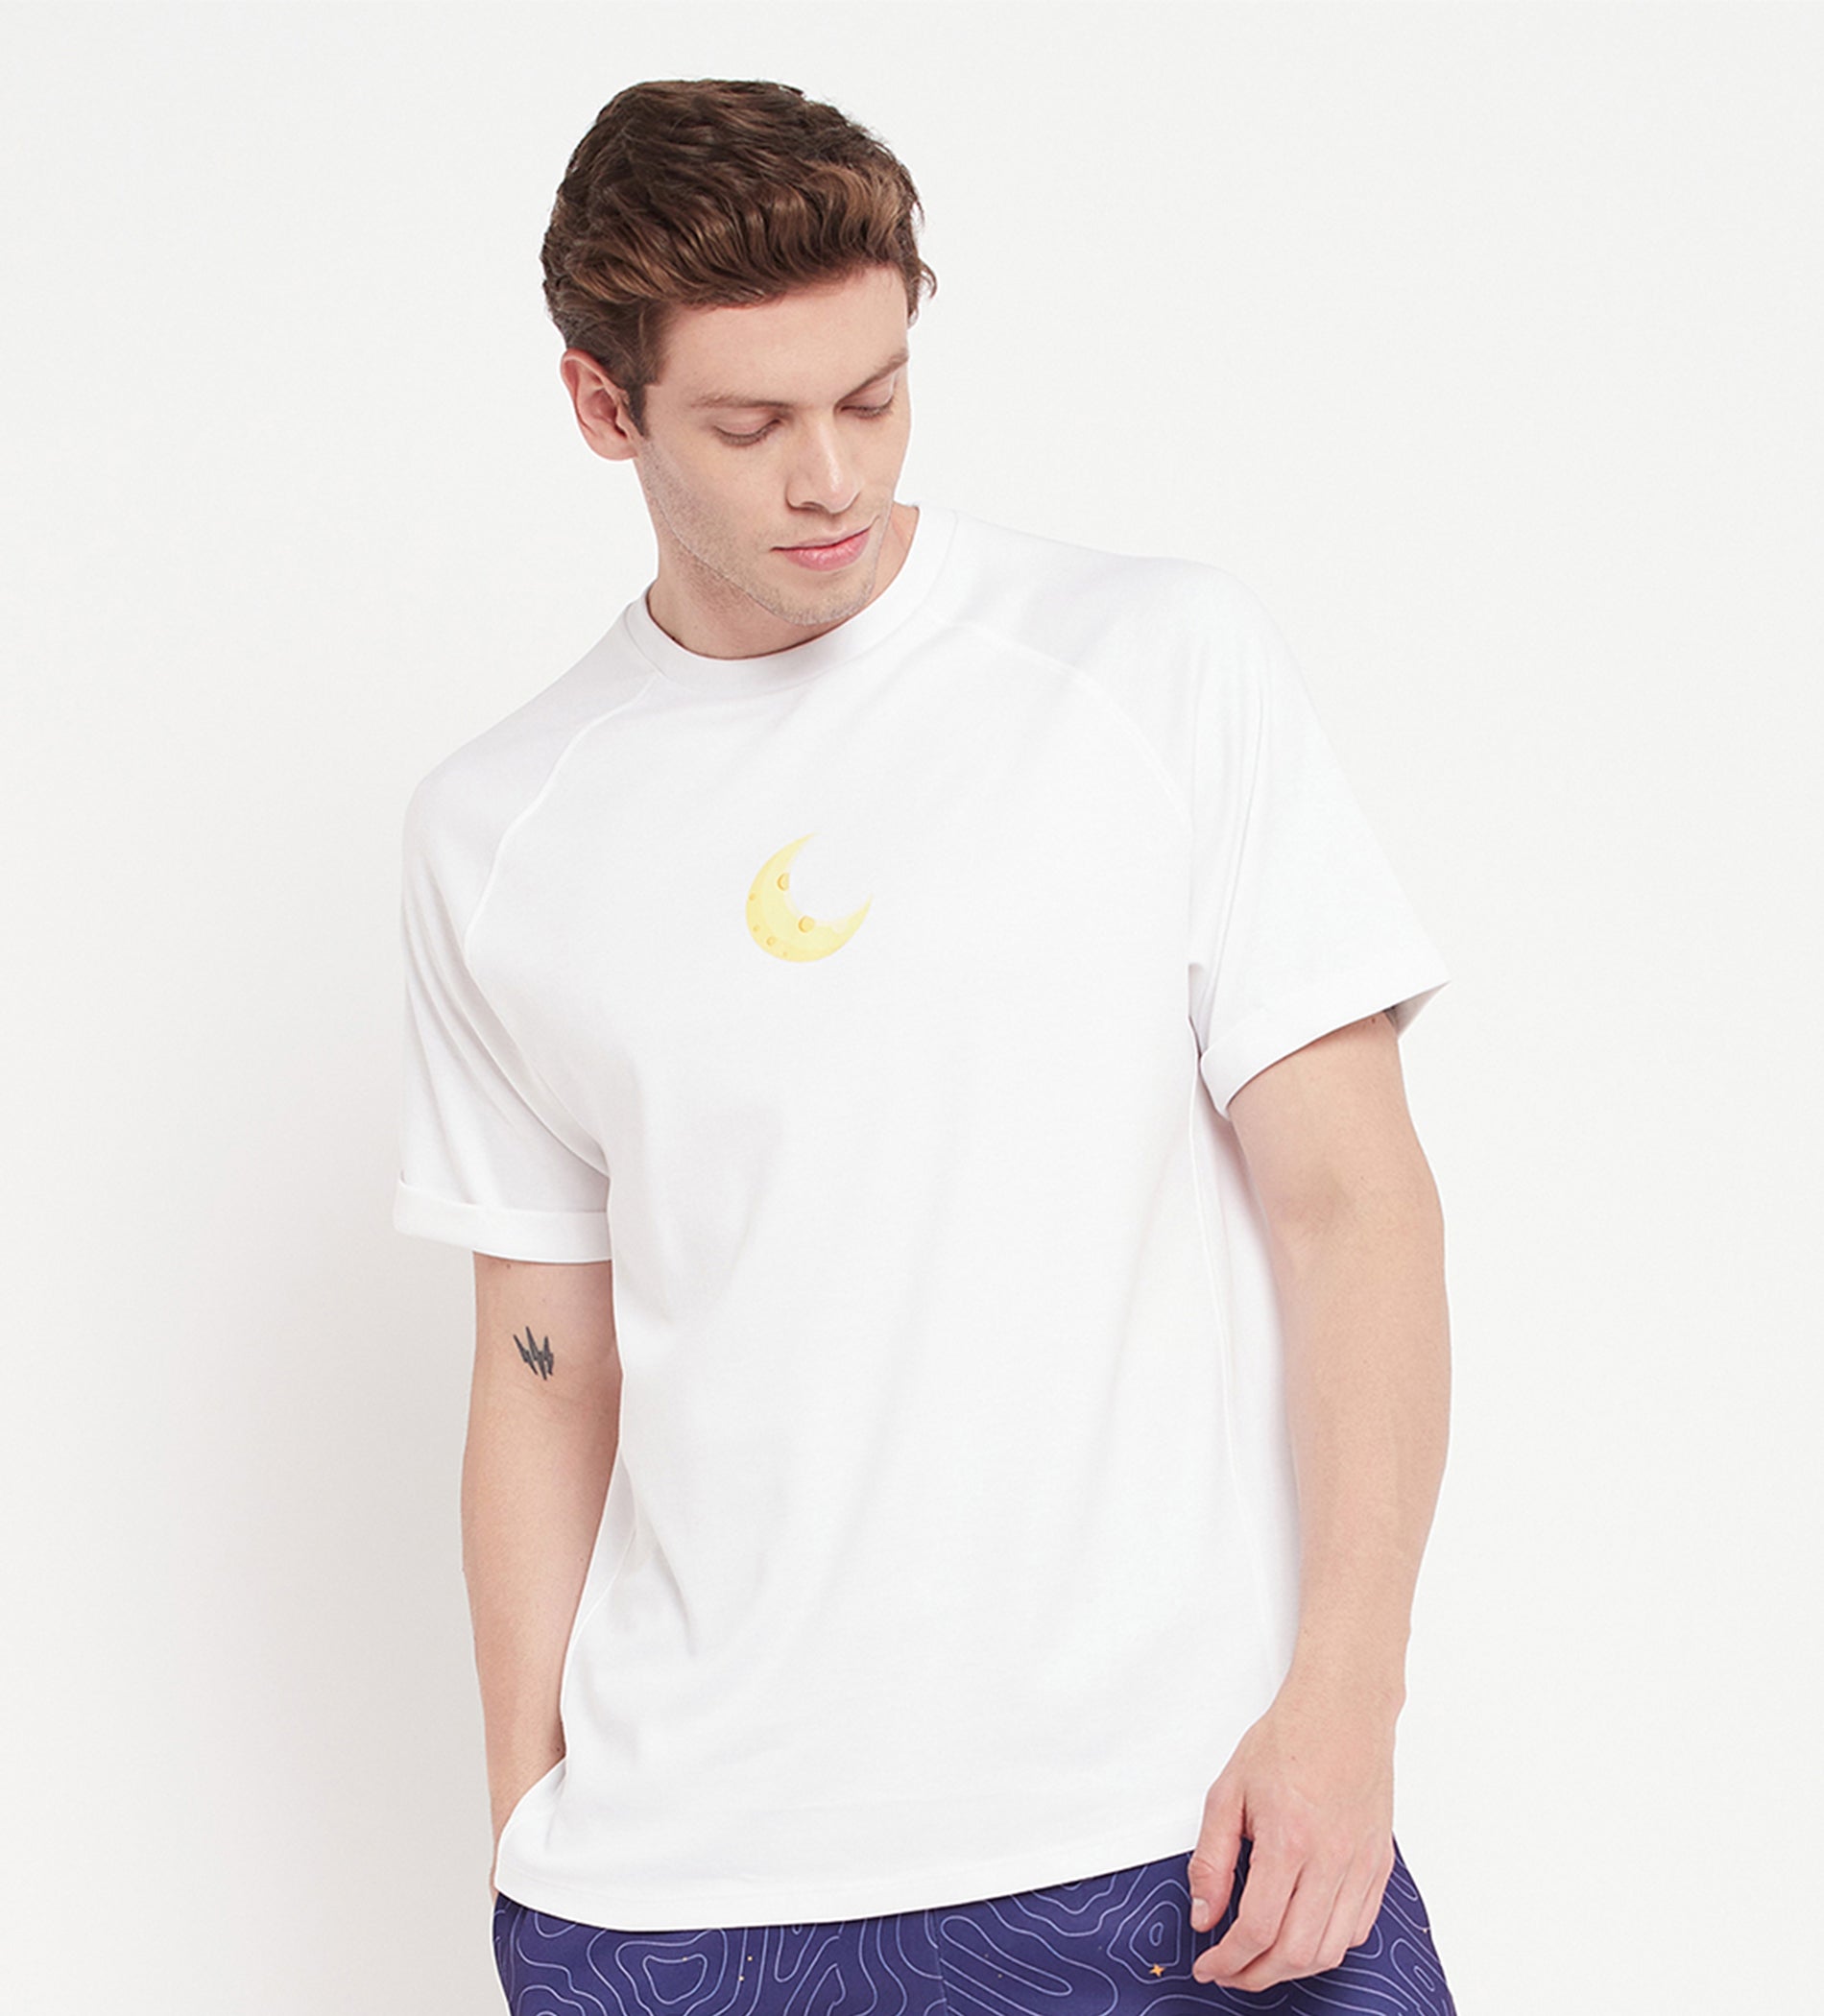 White Astronaut Regular T-shirt for Men - EDRIO